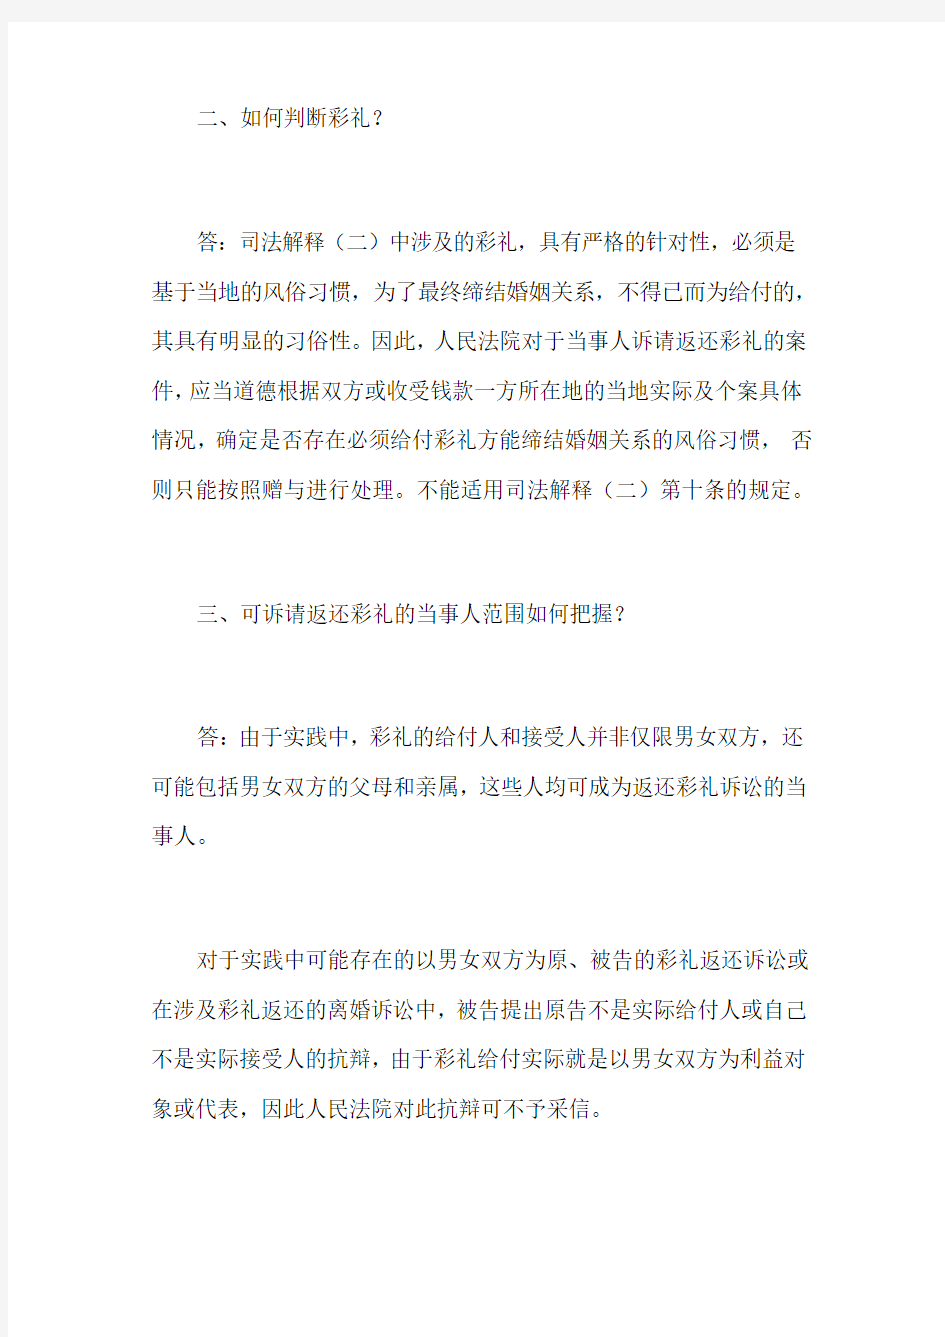 上海市高级人民法院关于适用最高人民法院婚姻法司法解释(二)若干问题的解答(二)20040907